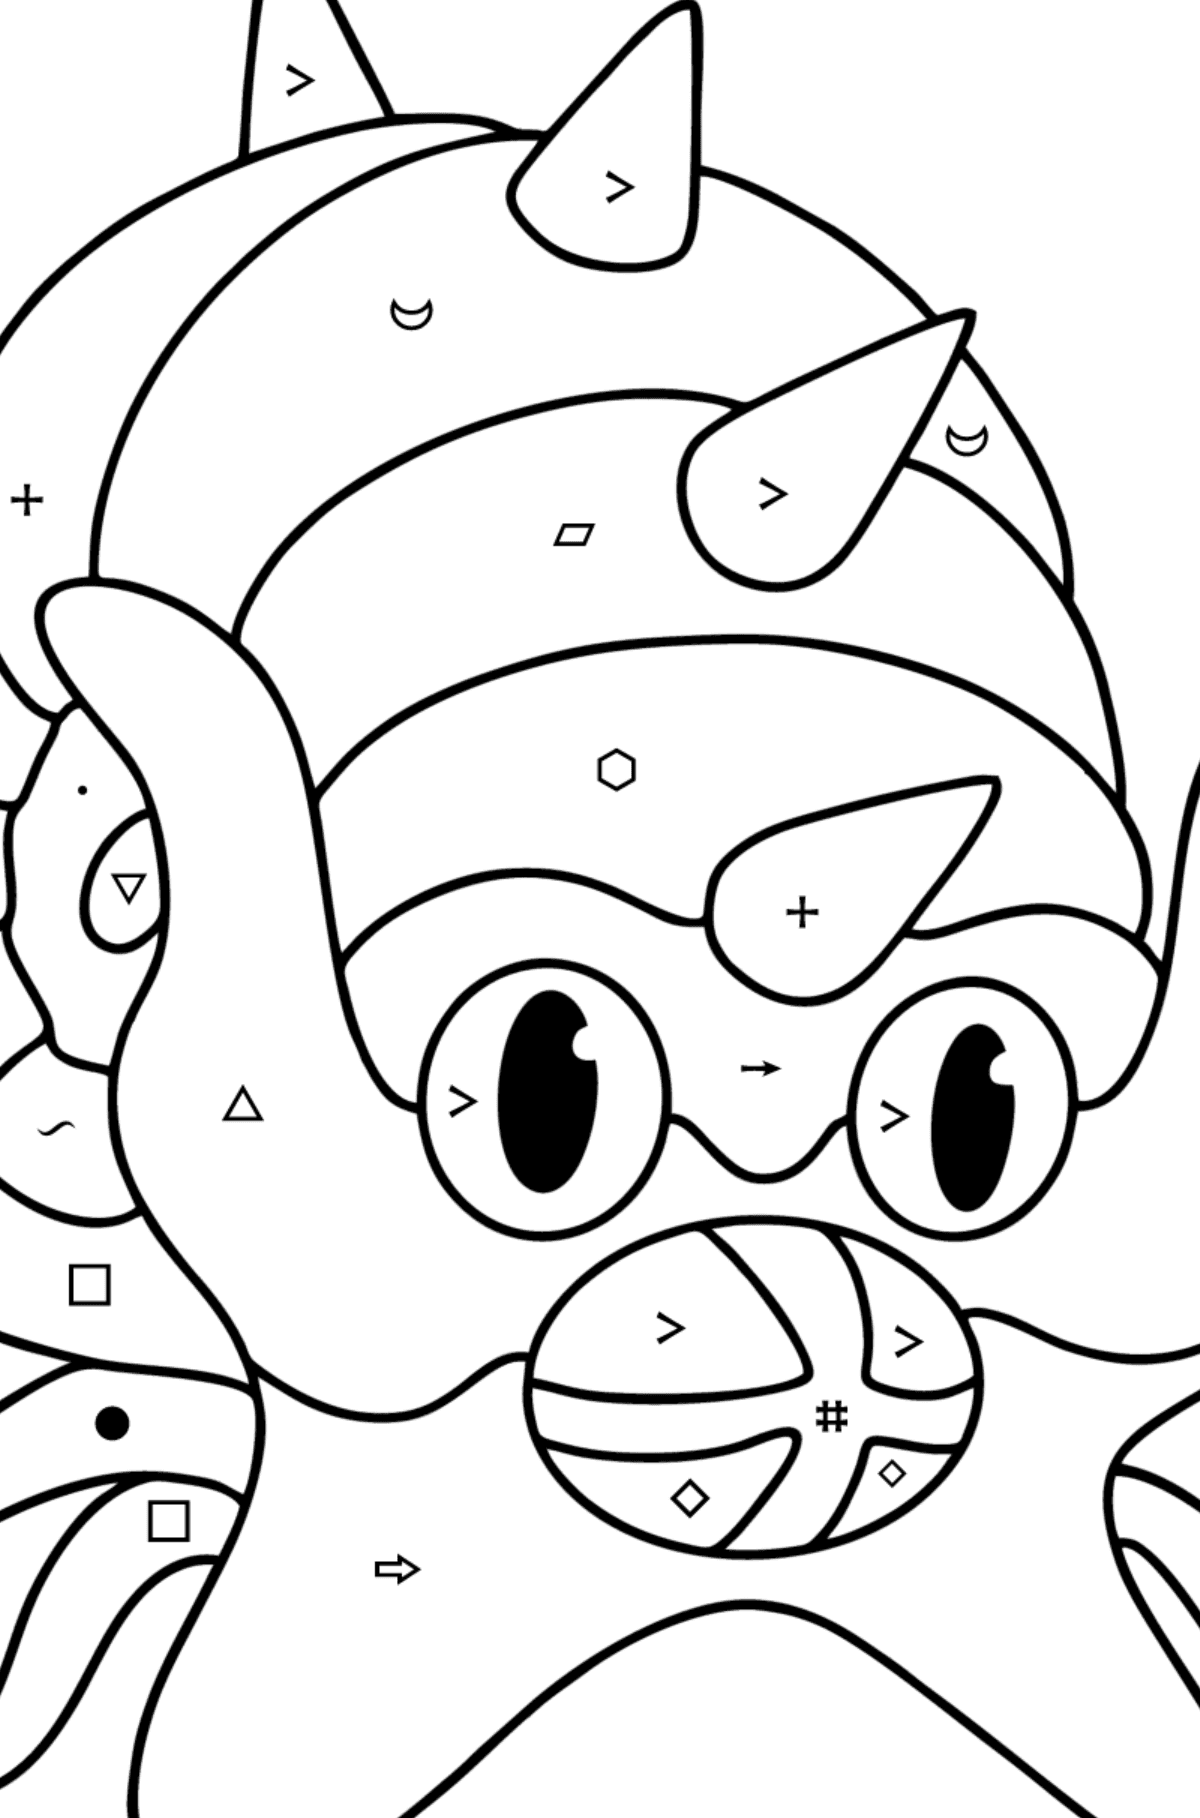 Boyama sayfası Pokémon XY Omastar - Sembollere ve Geometrik Şekillerle Boyama çocuklar için